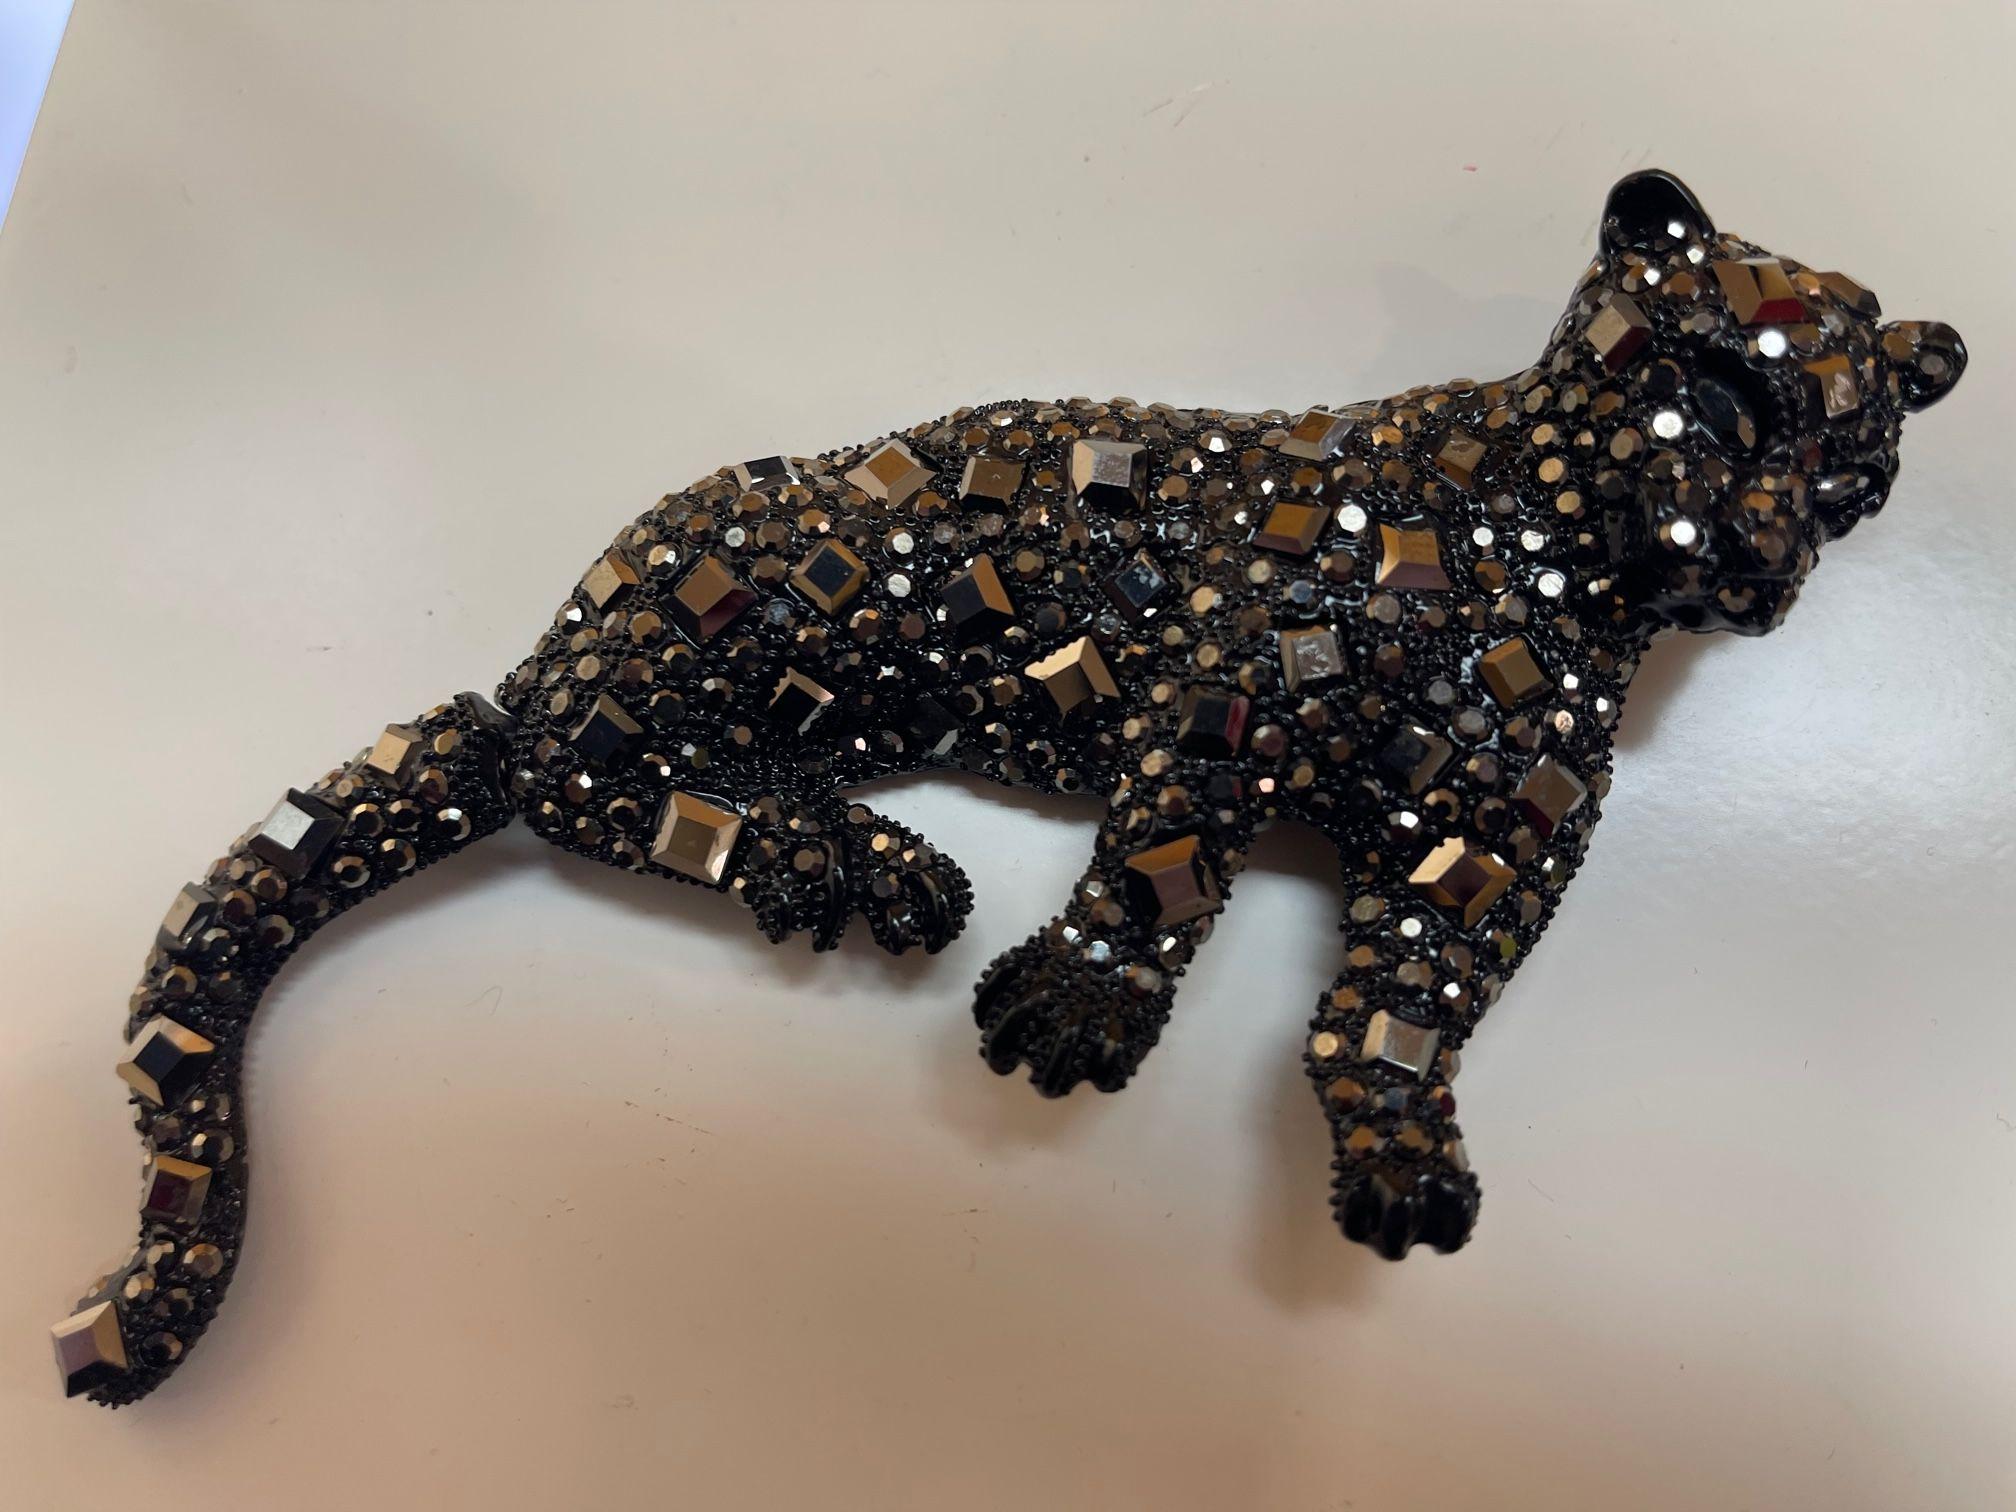 Einfach fabelhaft! Vintage Designer Big Black Cheetah Cat mit artikuliertem Schwanz Brosche Anhänger. Verziert mit funkelnden schwarzen Diamanten und runden Kunstkristallen. Dynamisch in ganz Sparkling Black! Ca. 5